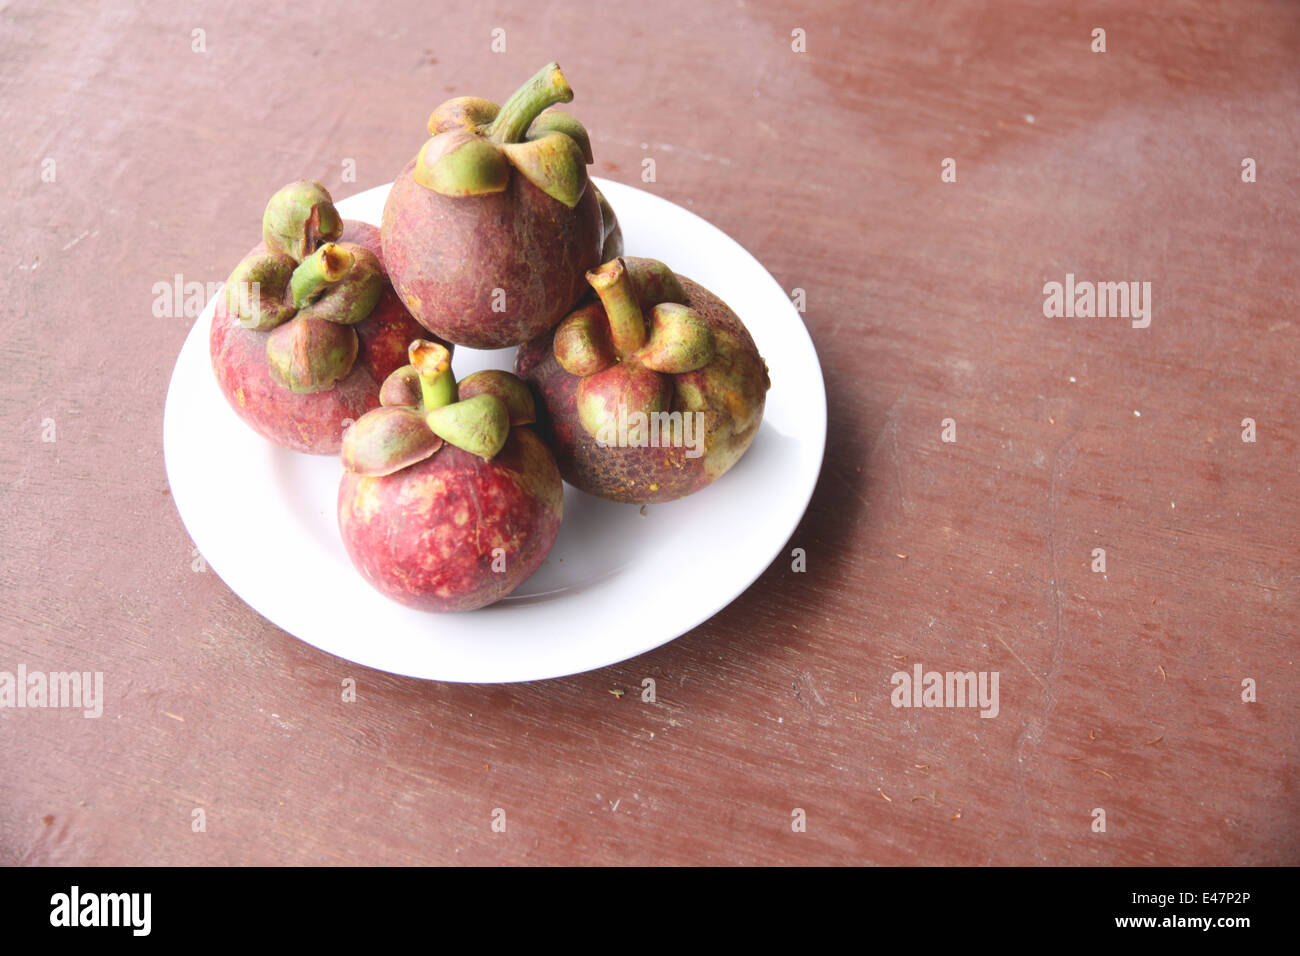 Frischen Mangostan-Frucht in Schale auf der Lebensmittel-Tabelle. Stockfoto